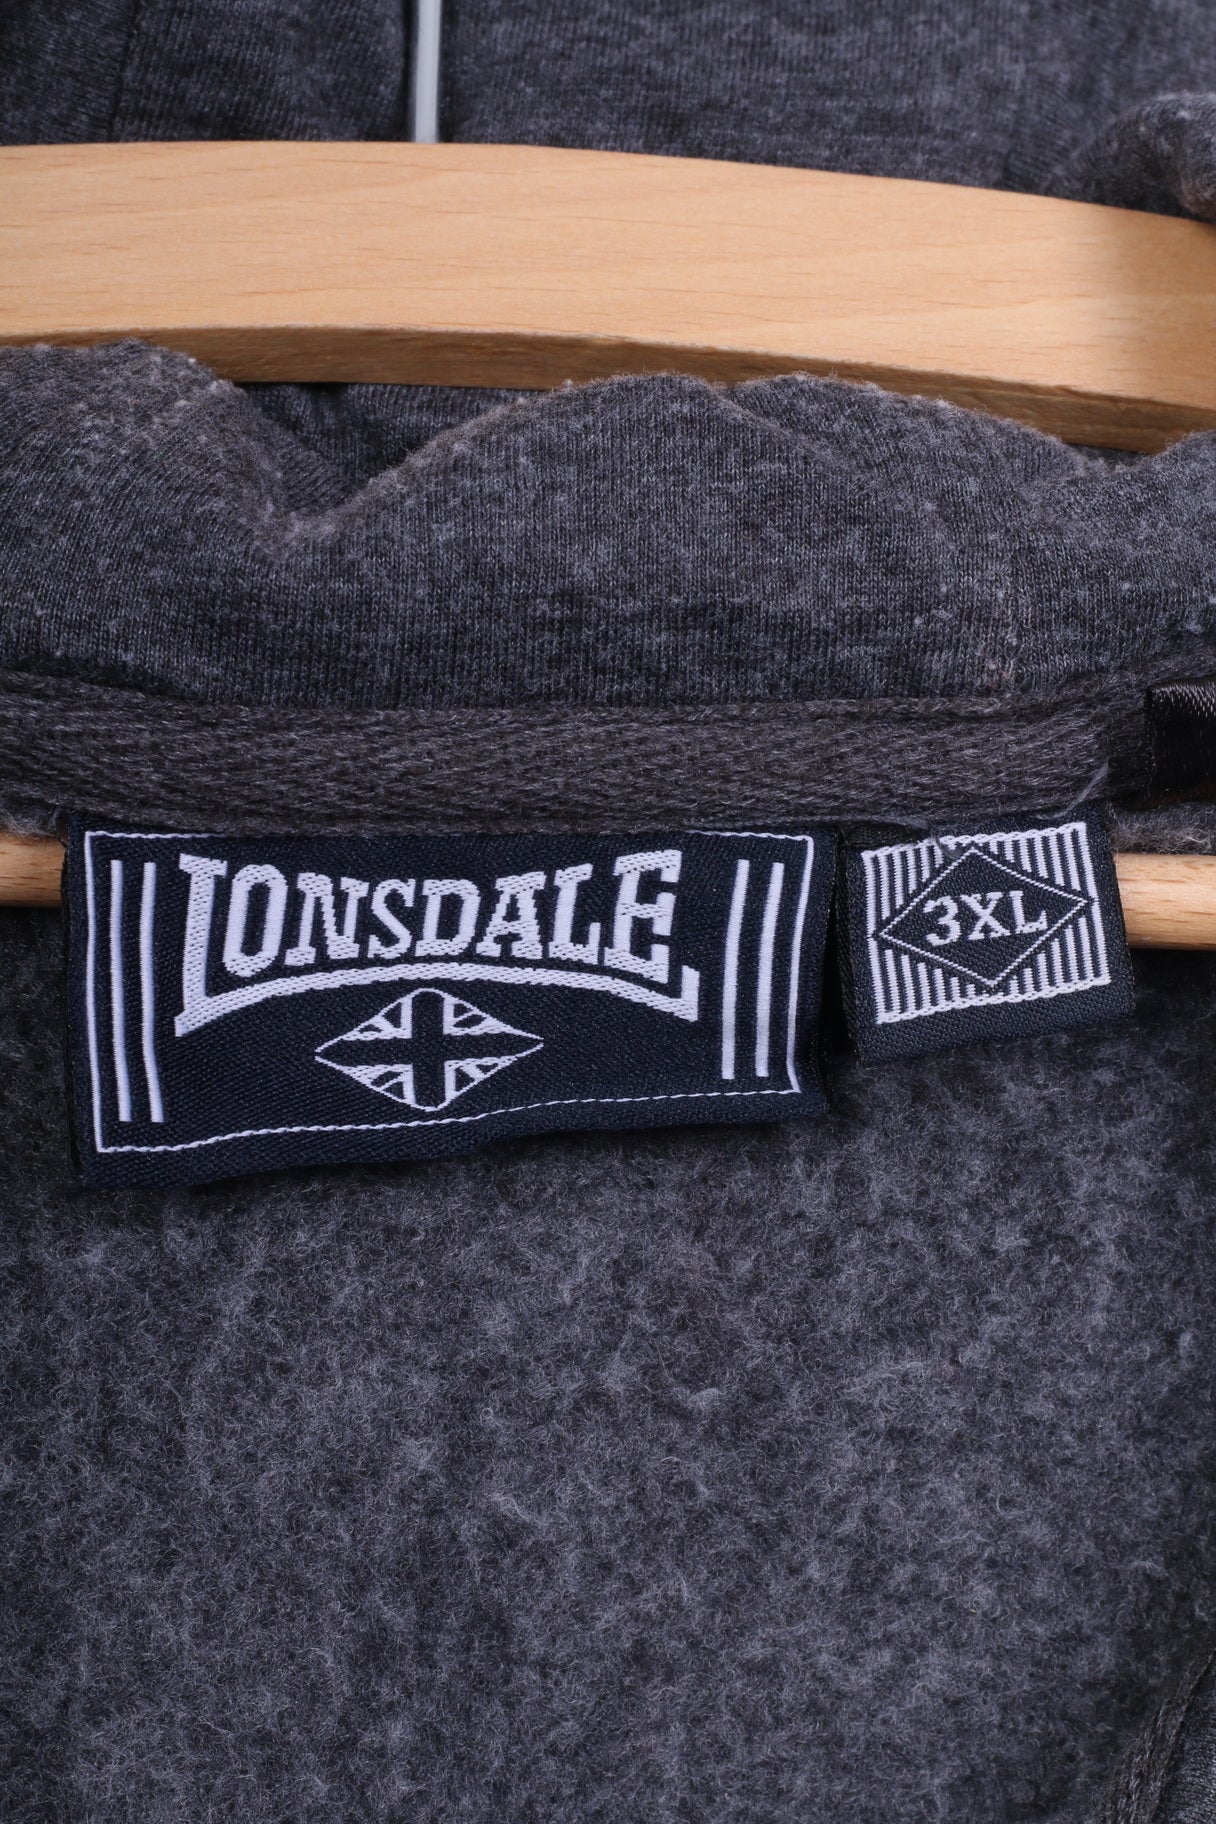 Lonsdale London Mens 3XL Bodywarmer Sleeveless Vest Grey Hooded Cotton Full Zipper Sportswear